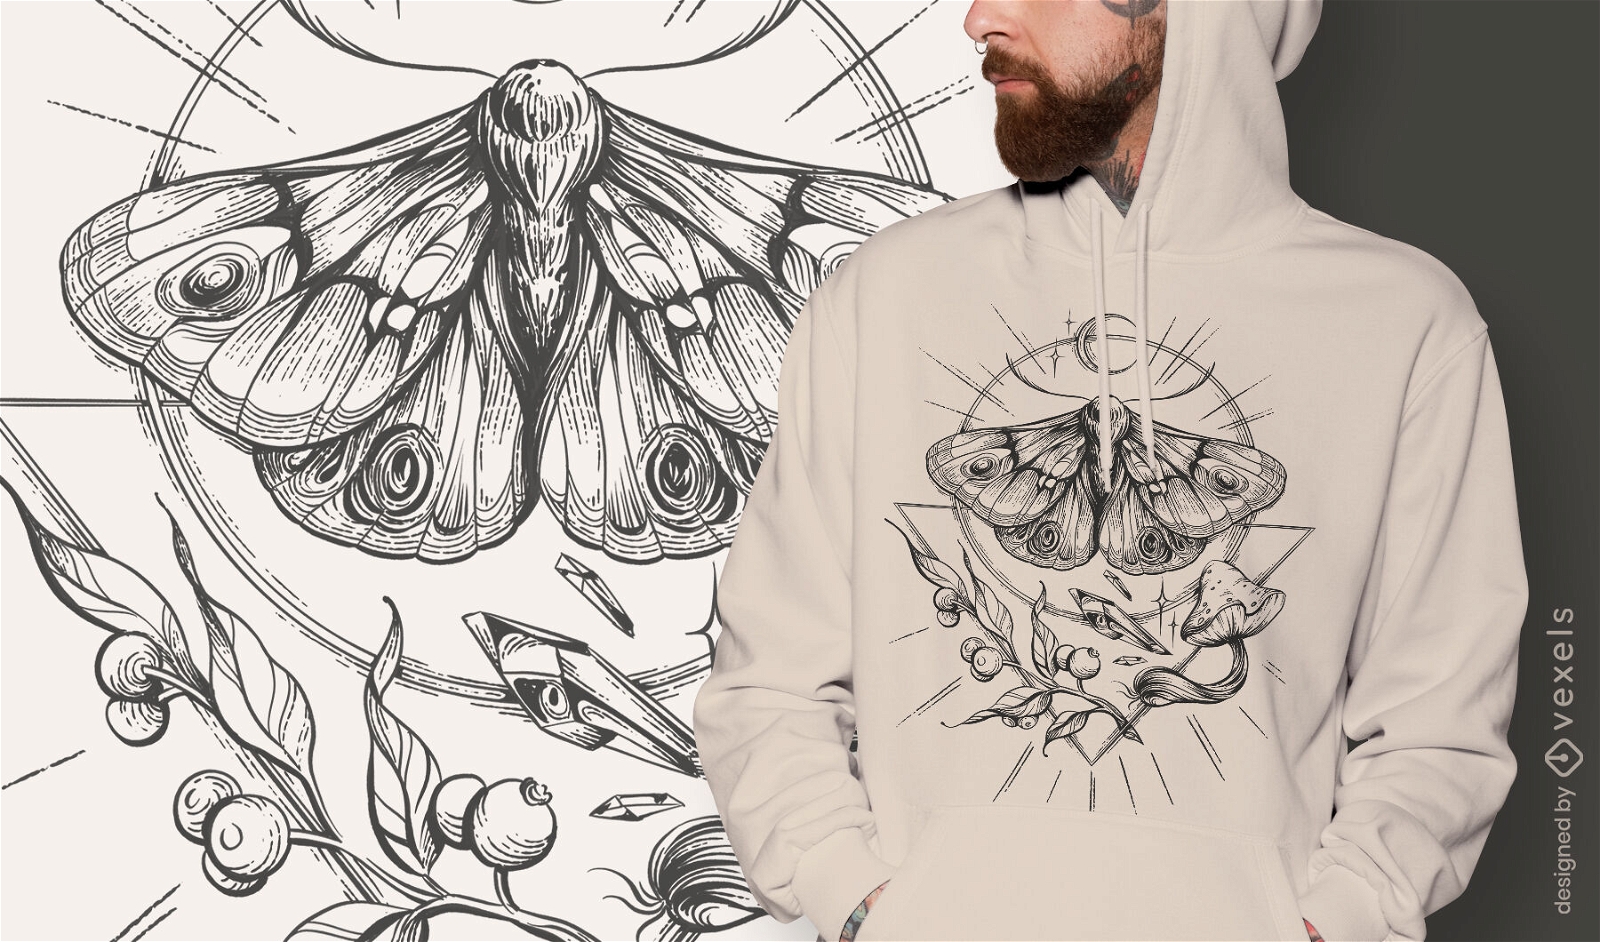 Diseño detallado de camiseta de mariposa.